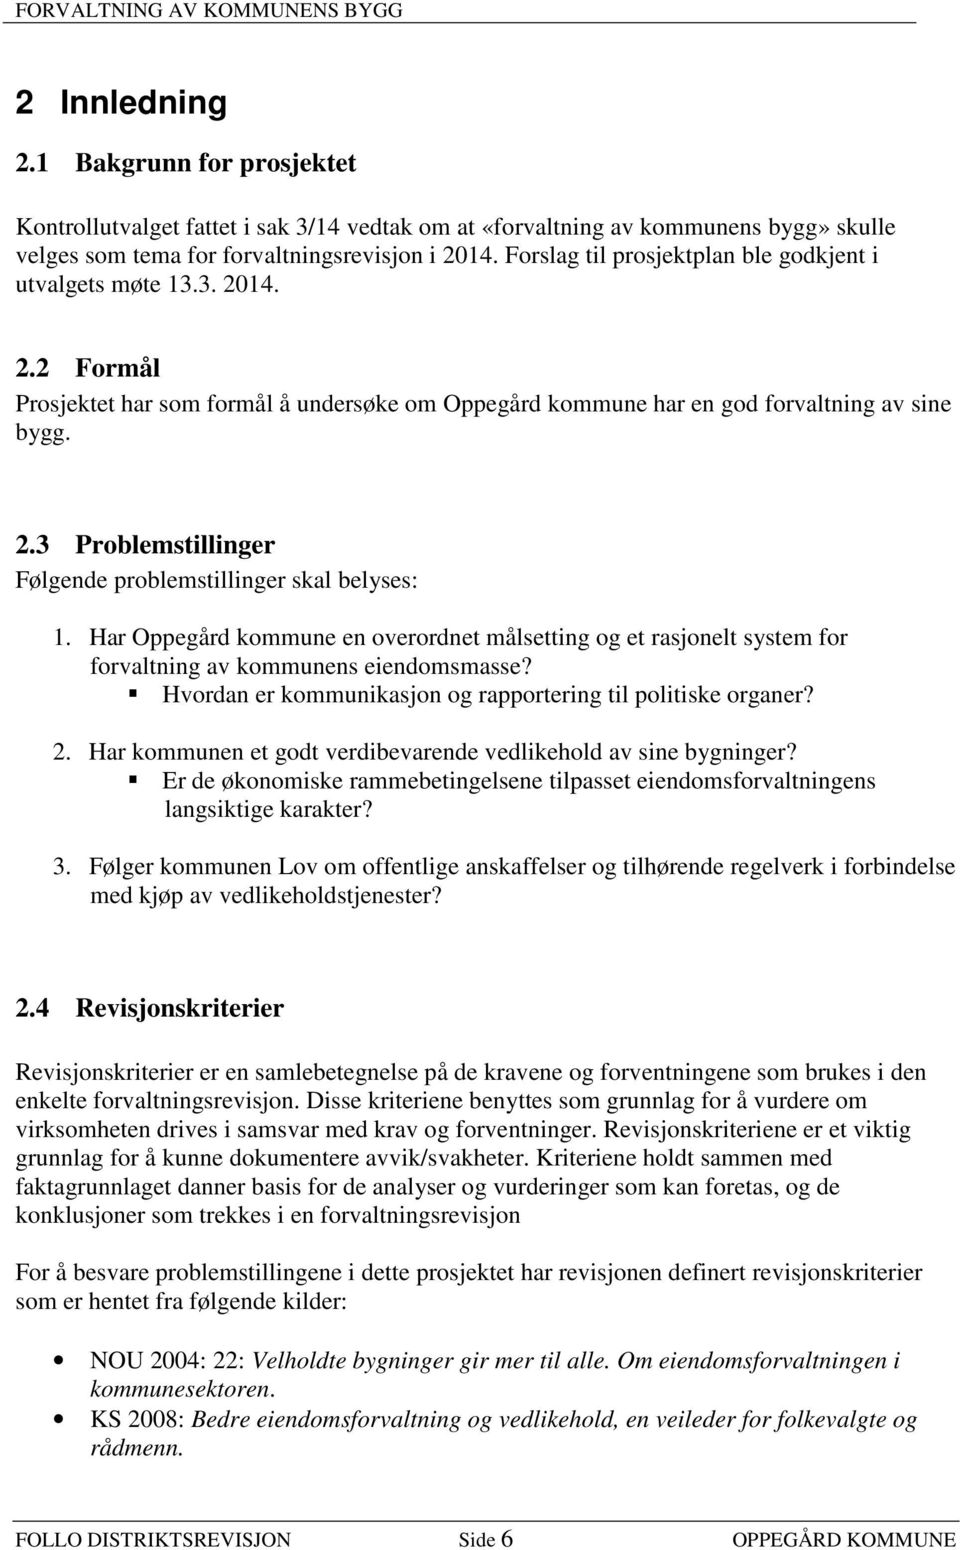 Har Oppegård kommune en overordnet målsetting og et rasjonelt system for forvaltning av kommunens eiendomsmasse? Hvordan er kommunikasjon og rapportering til politiske organer? 2.